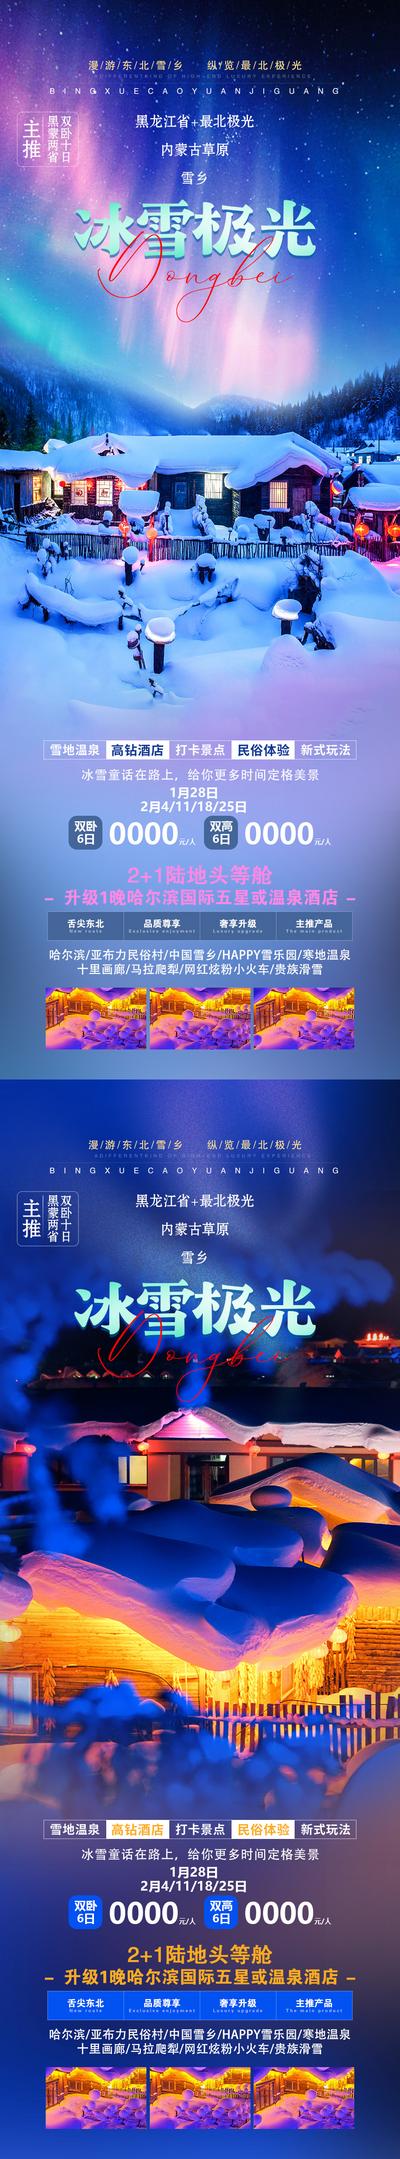 南门网 海报 旅游 东北 哈尔滨 雪乡 极光 漠河 美景